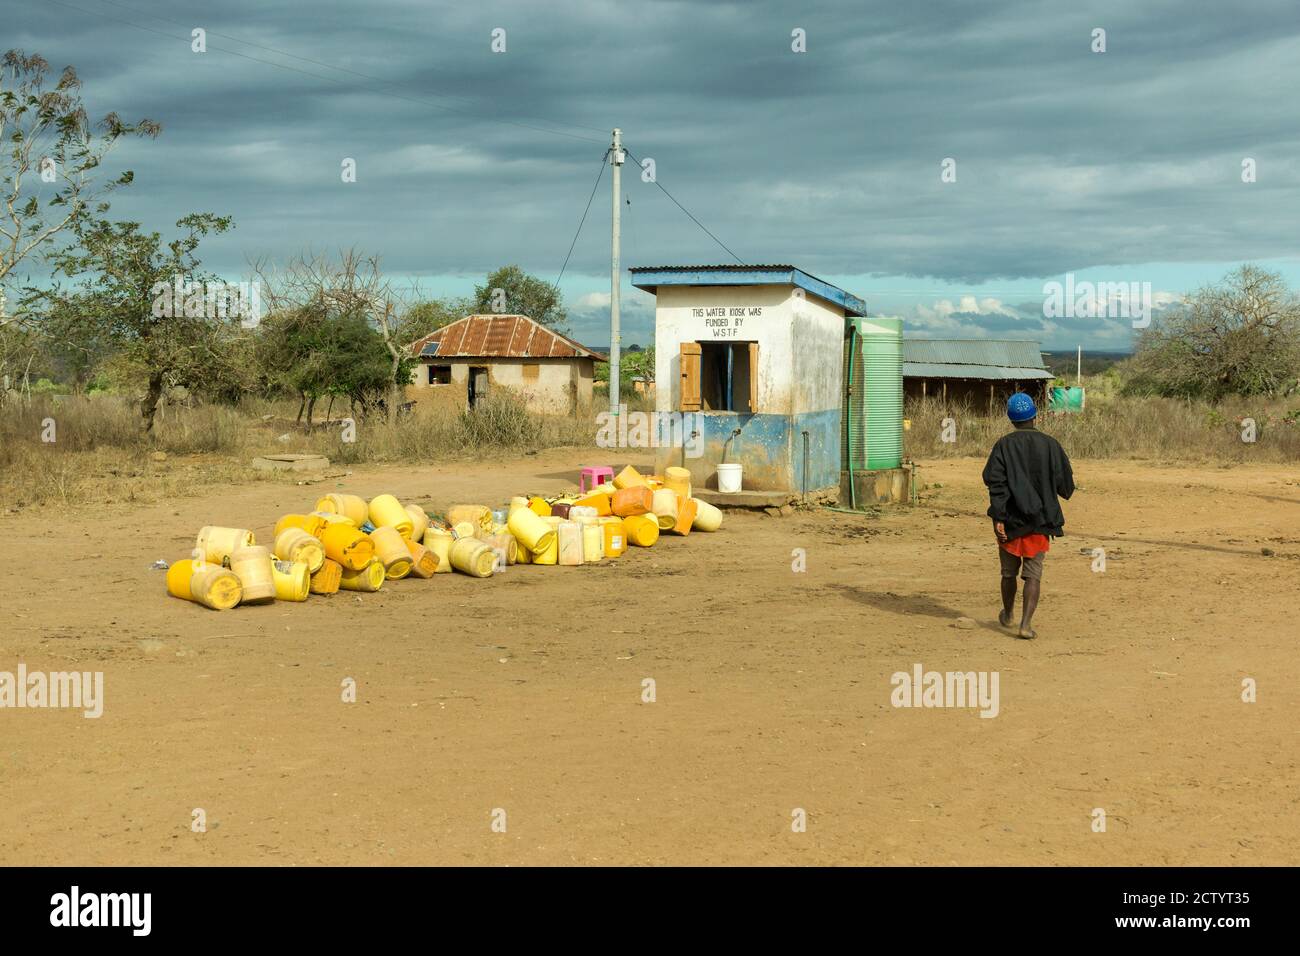 Un homme africain passe devant des conteneurs vides à l'extérieur d'une eau kiosque dans les zones rurales du Kenya Banque D'Images